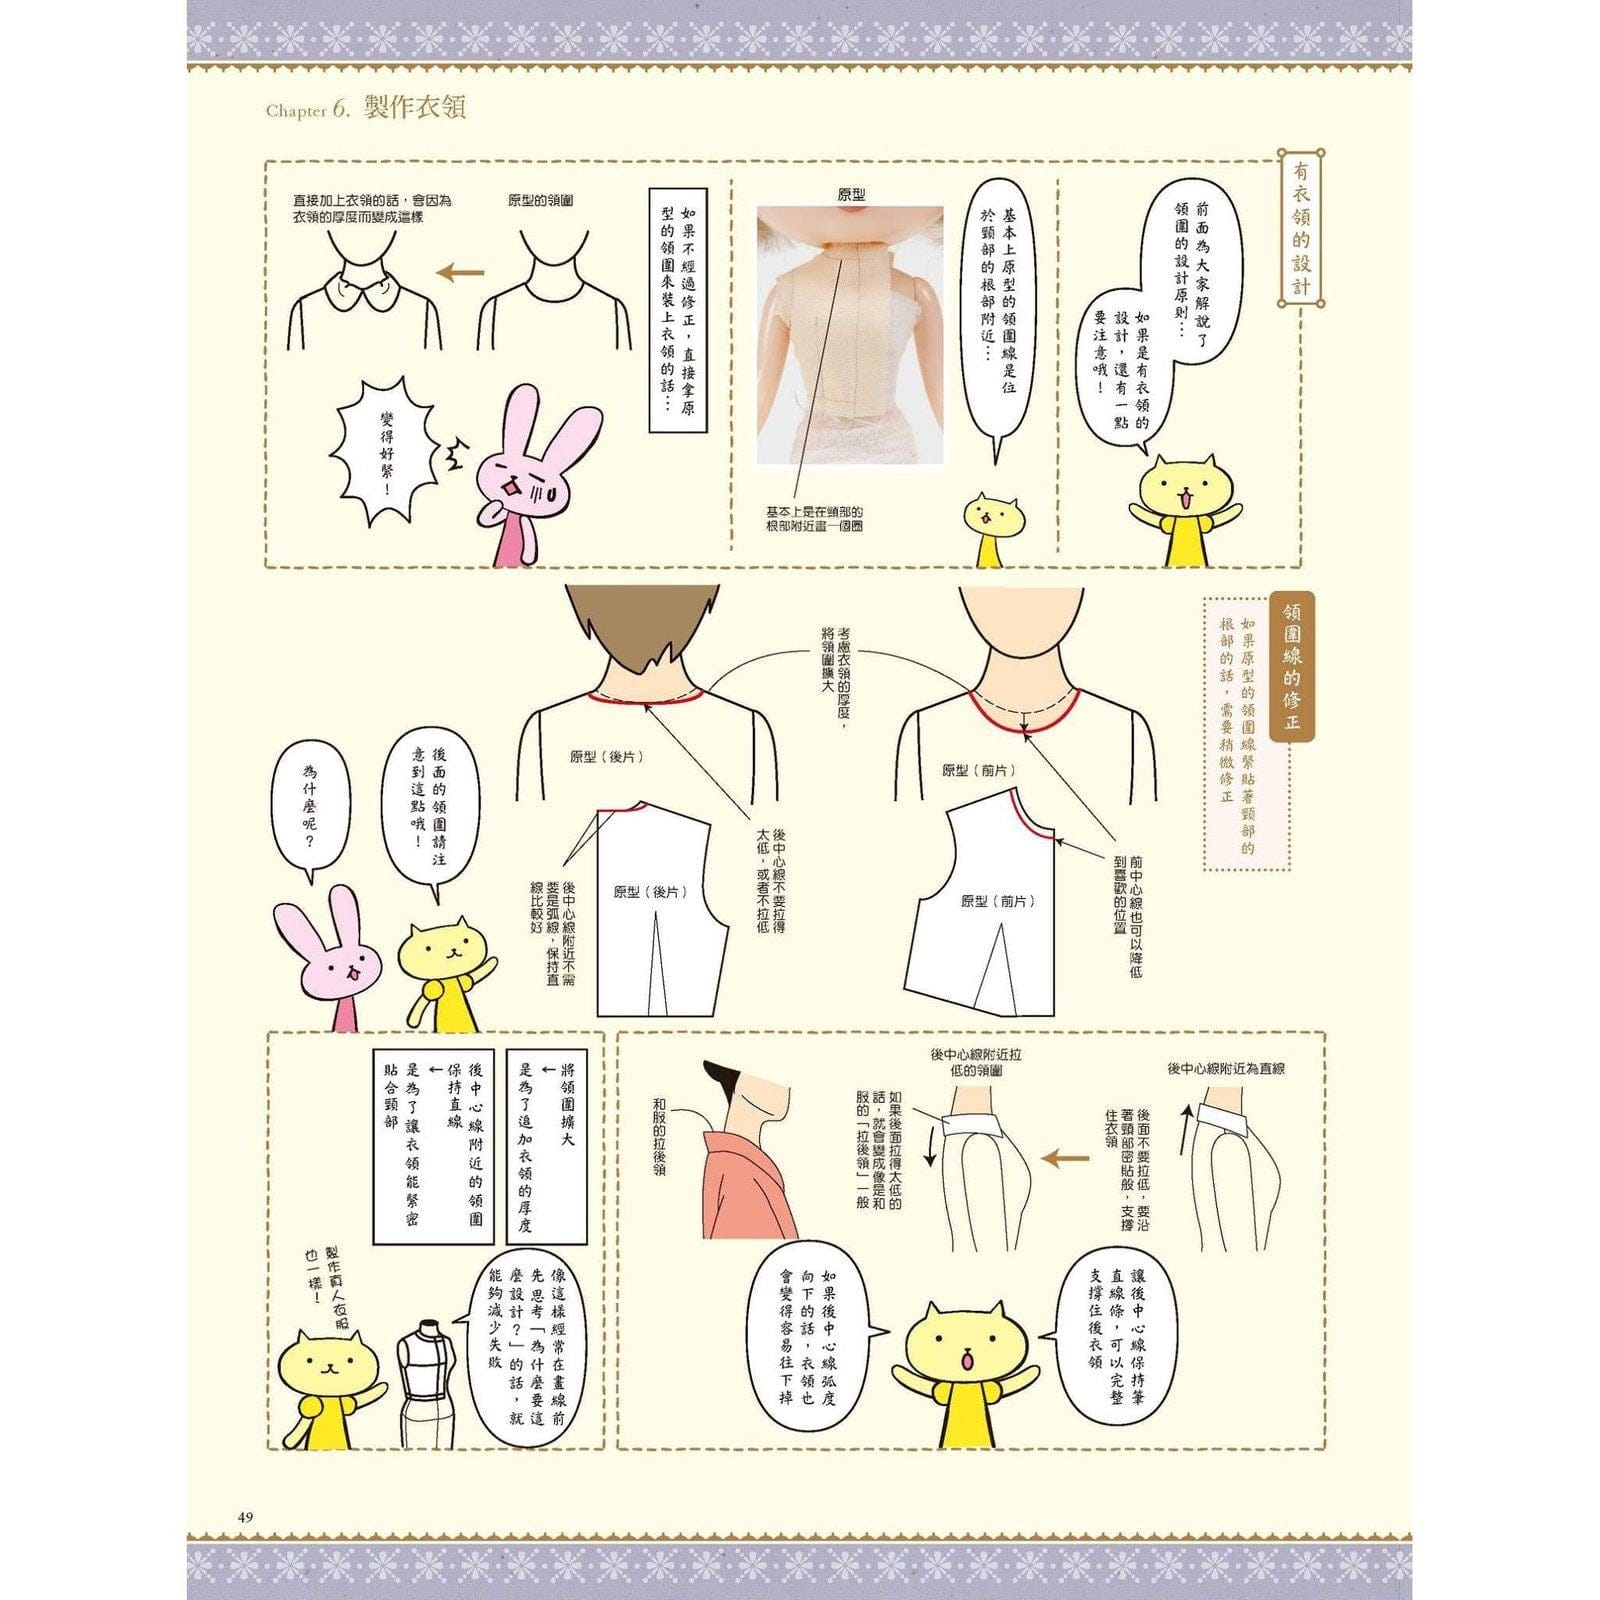 【北星】 荒木佐和子的紙型教科書：娃娃的原型、袖子、衣領 BJD YoSD Blythe OB SD momoko